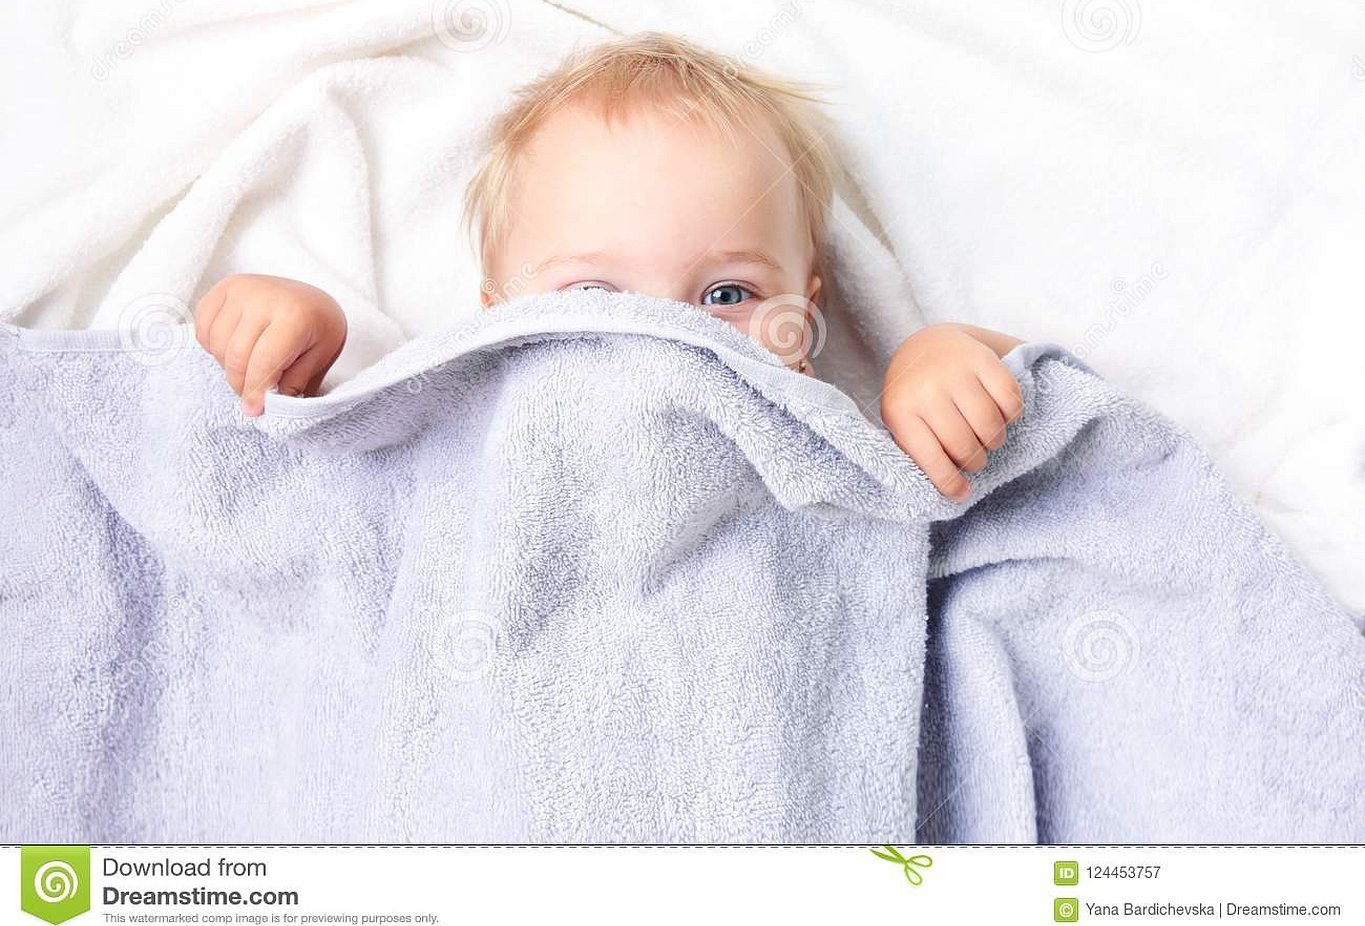 Одеяльце для новорожденного для сна